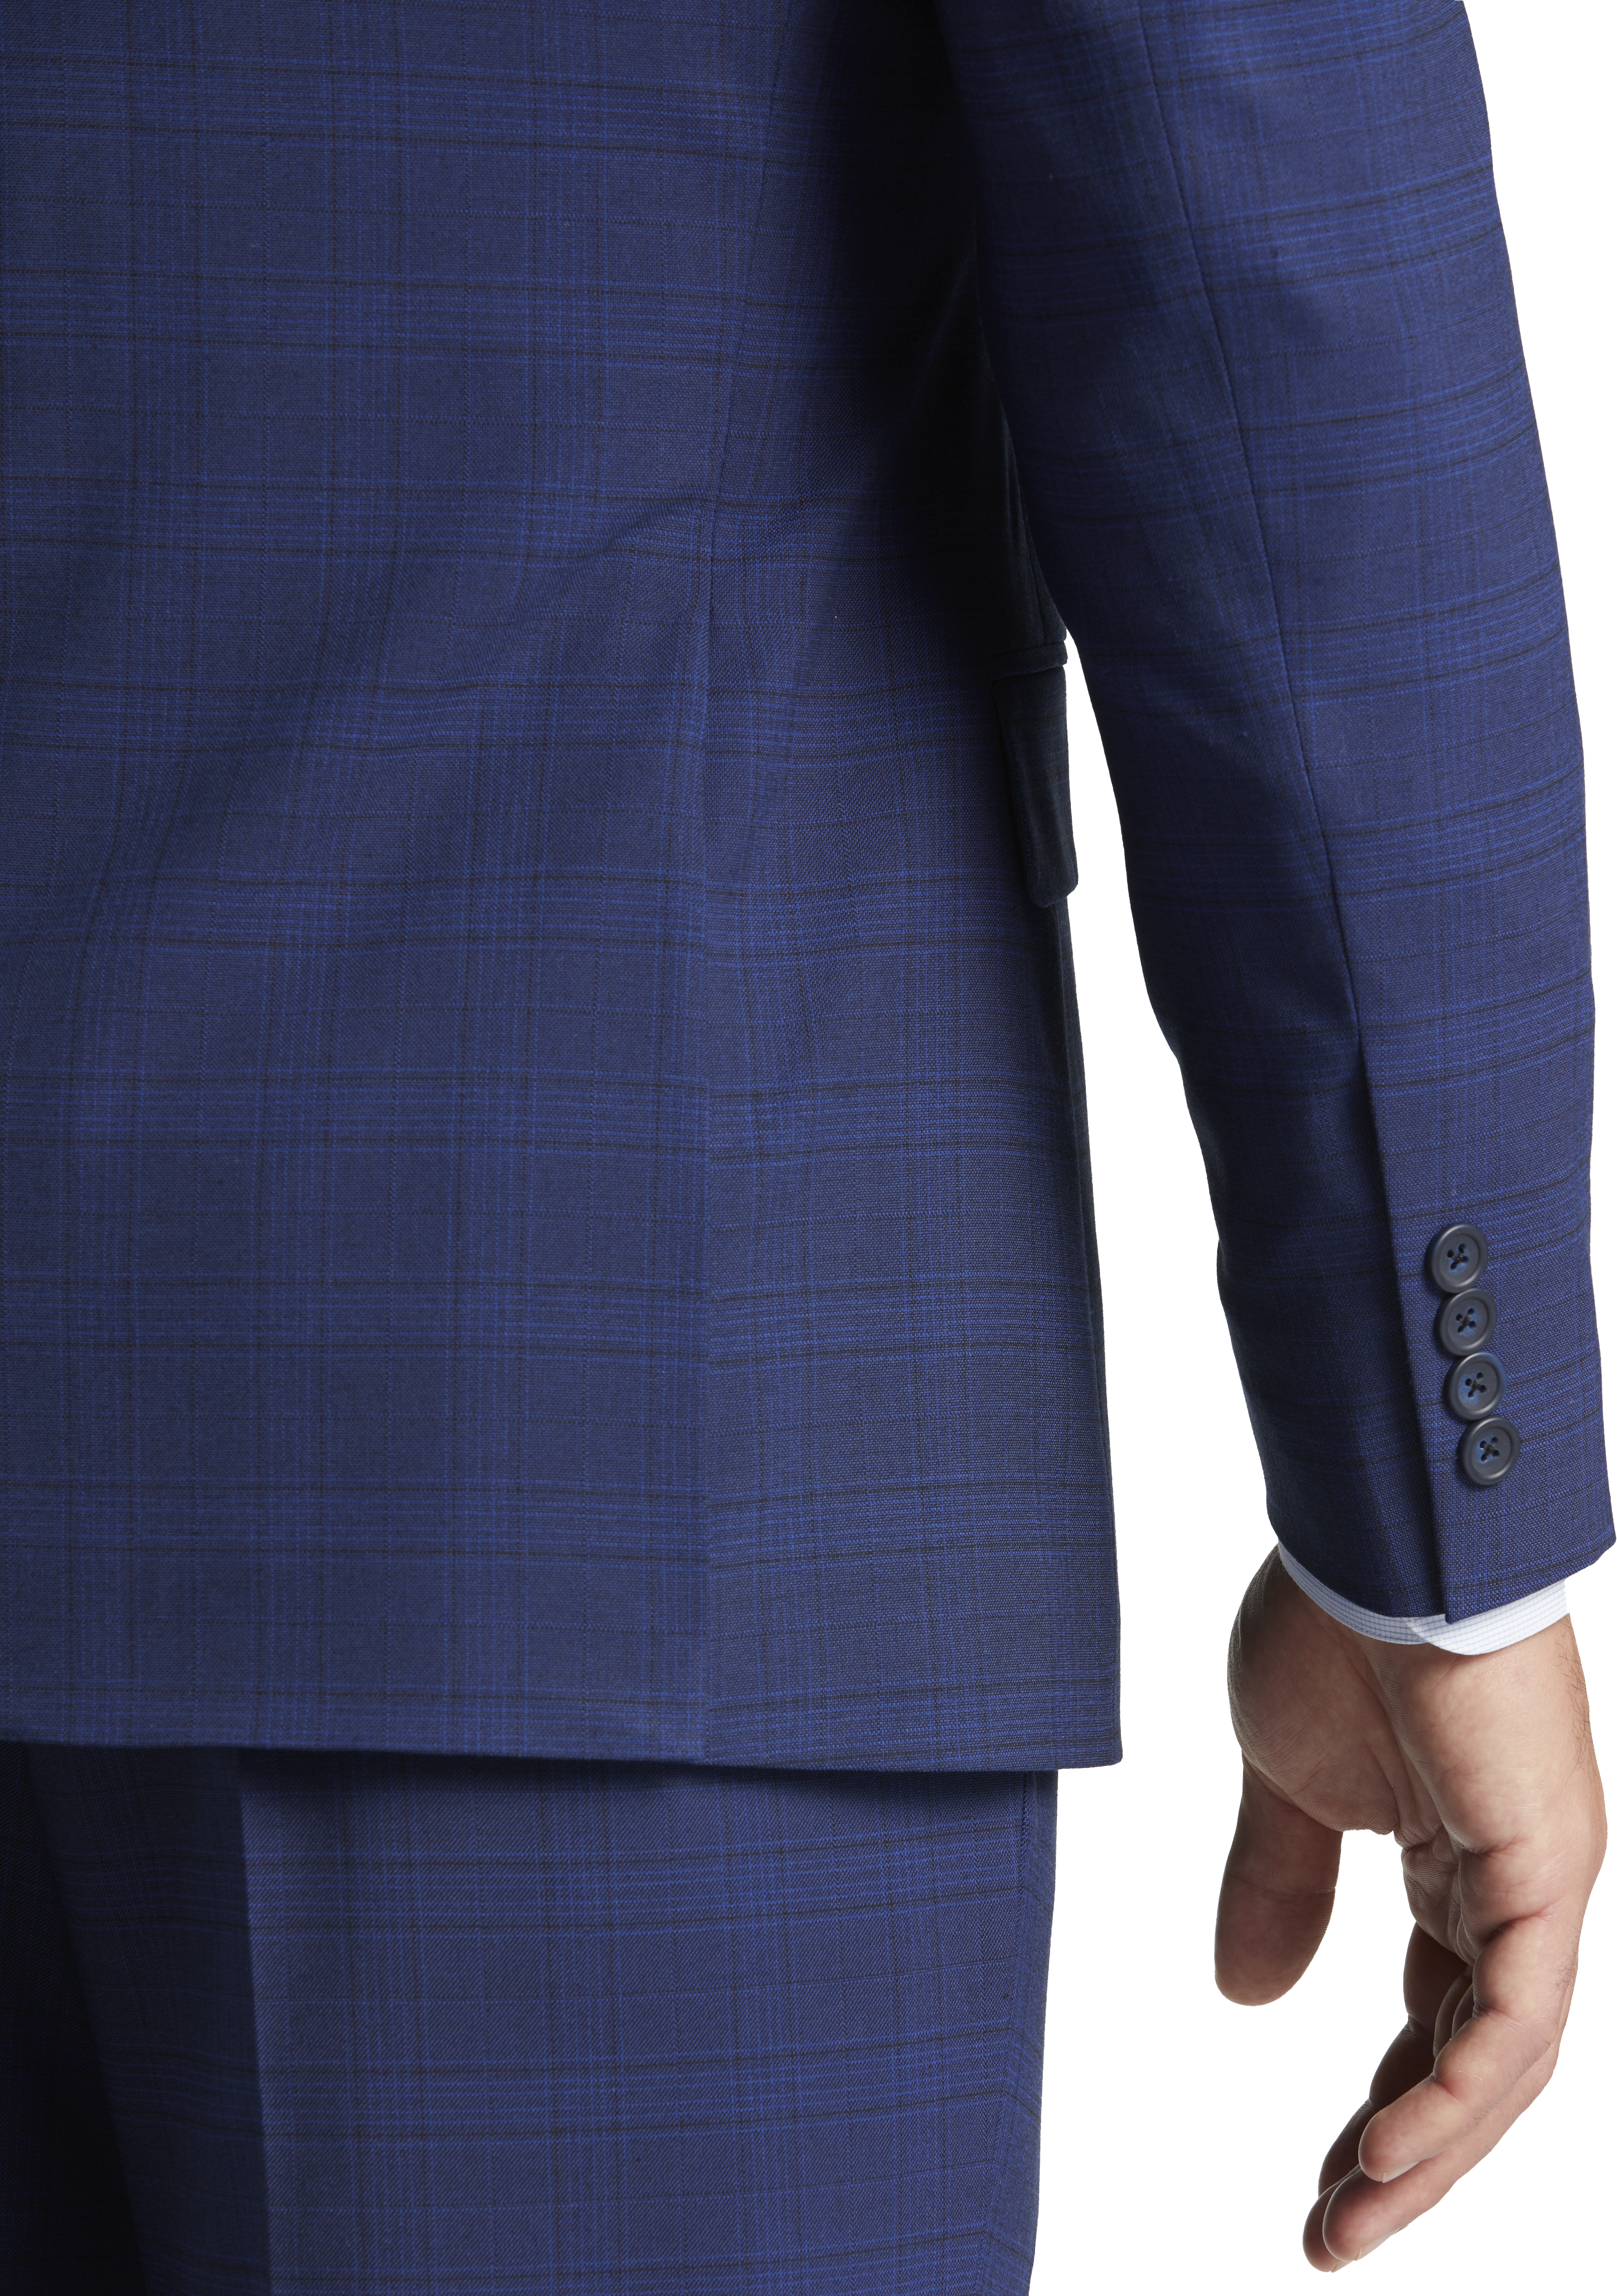 Modern Fit Plaid Suit Separates Jacket